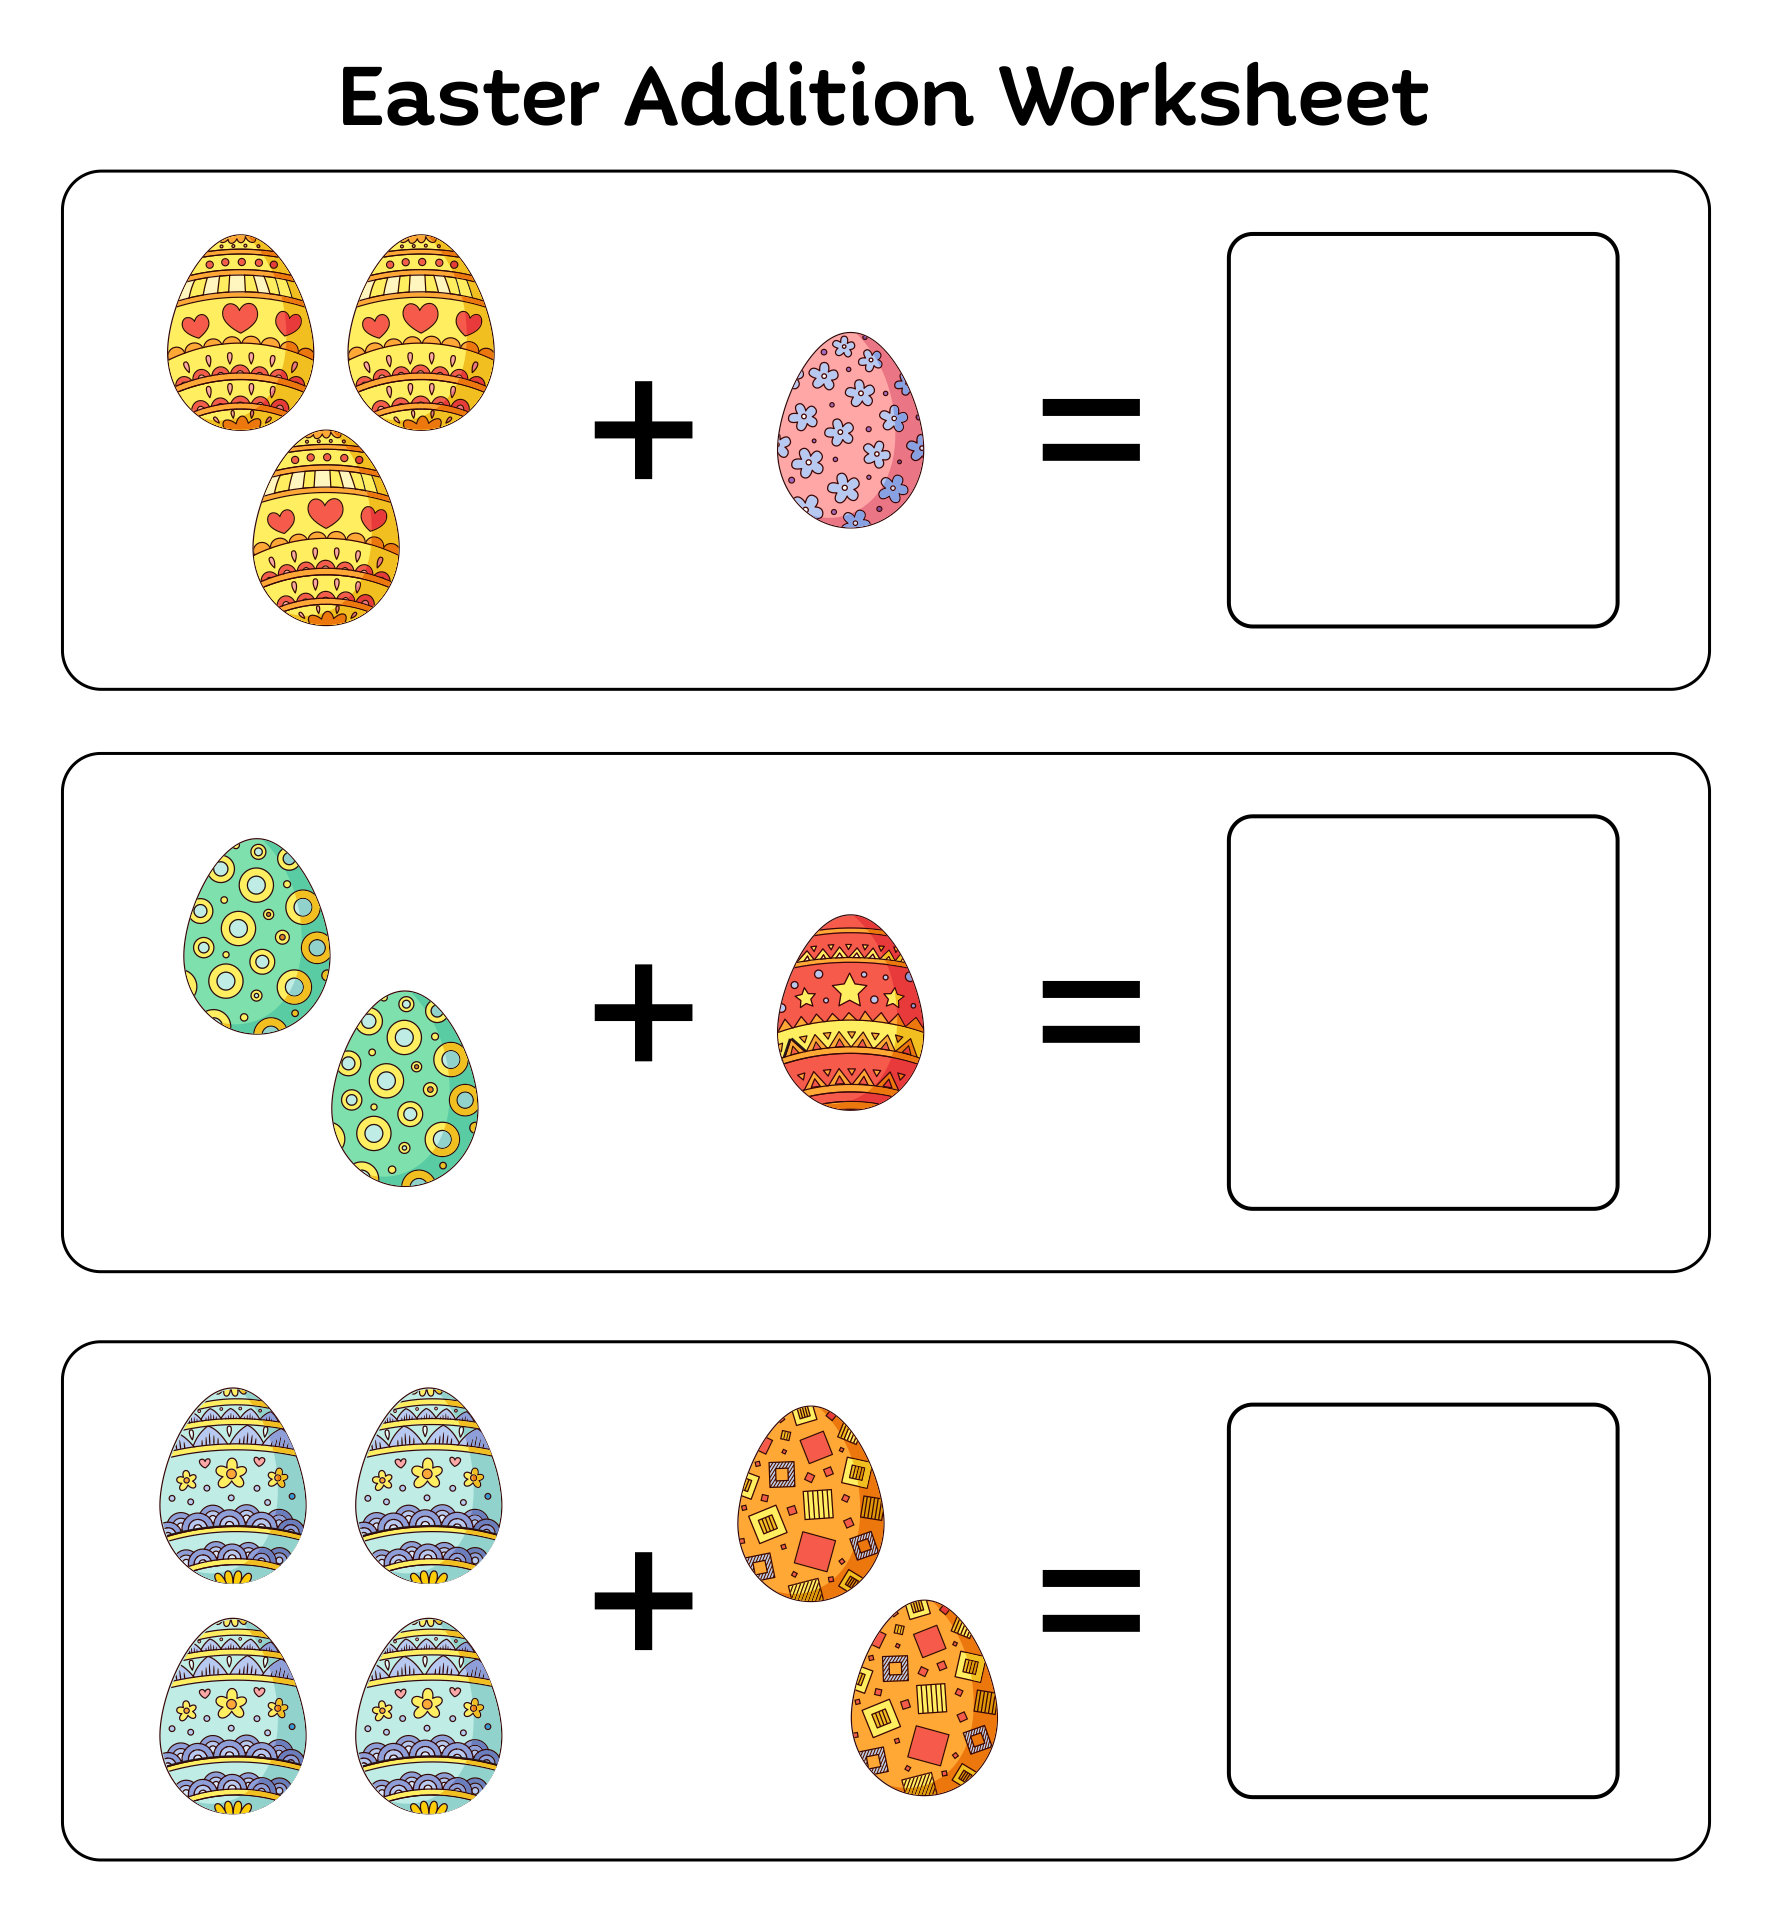 Kindergarten Easter Addition Worksheets